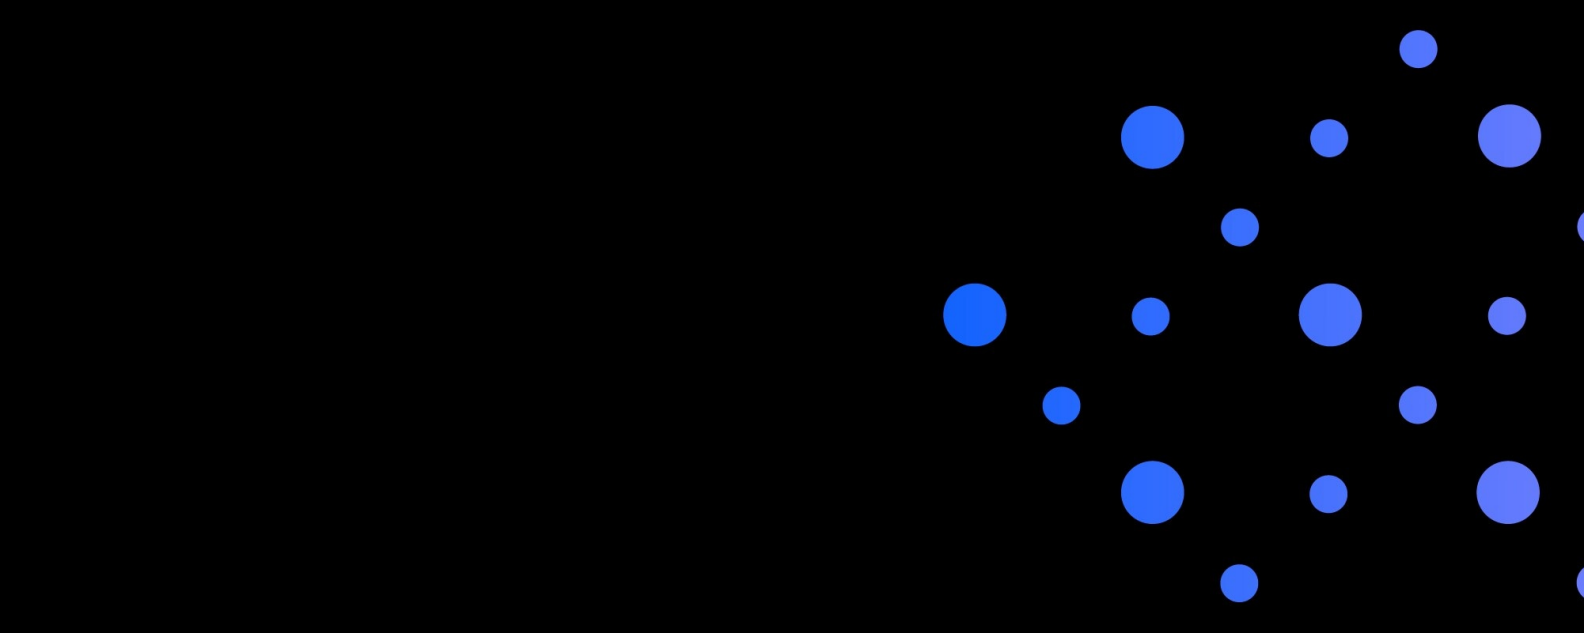 Gambar ruang utama dengan titik biru besar